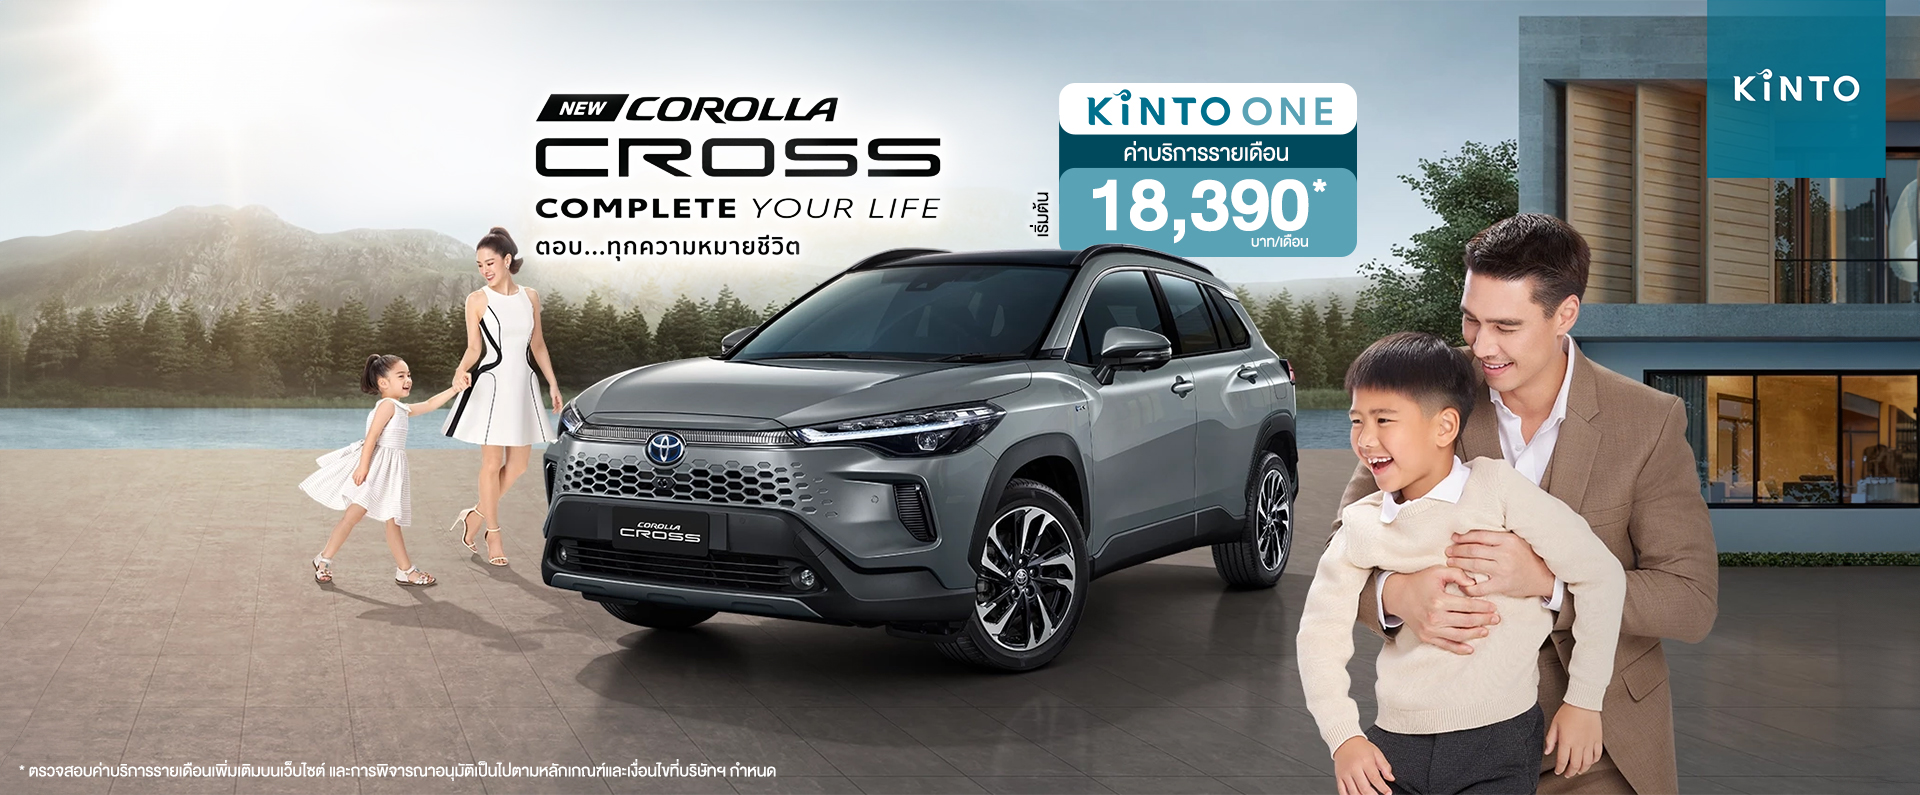 KINTO New Corolla Cross - Product